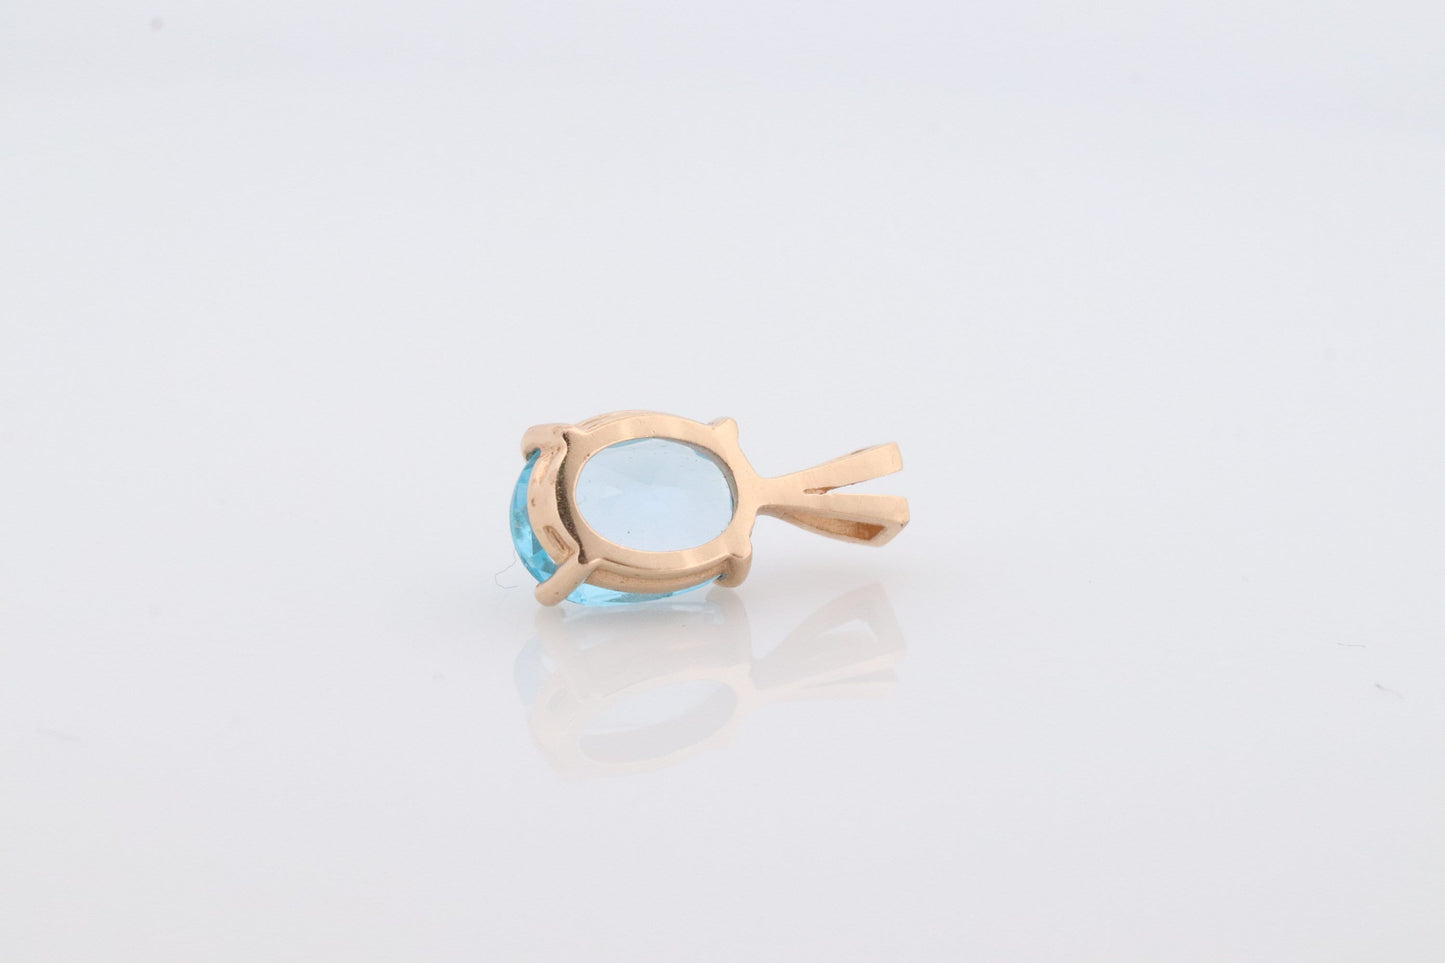 14k Blue TOPAZ Pendant. High quality solitaire oval pendant piece. st(42)